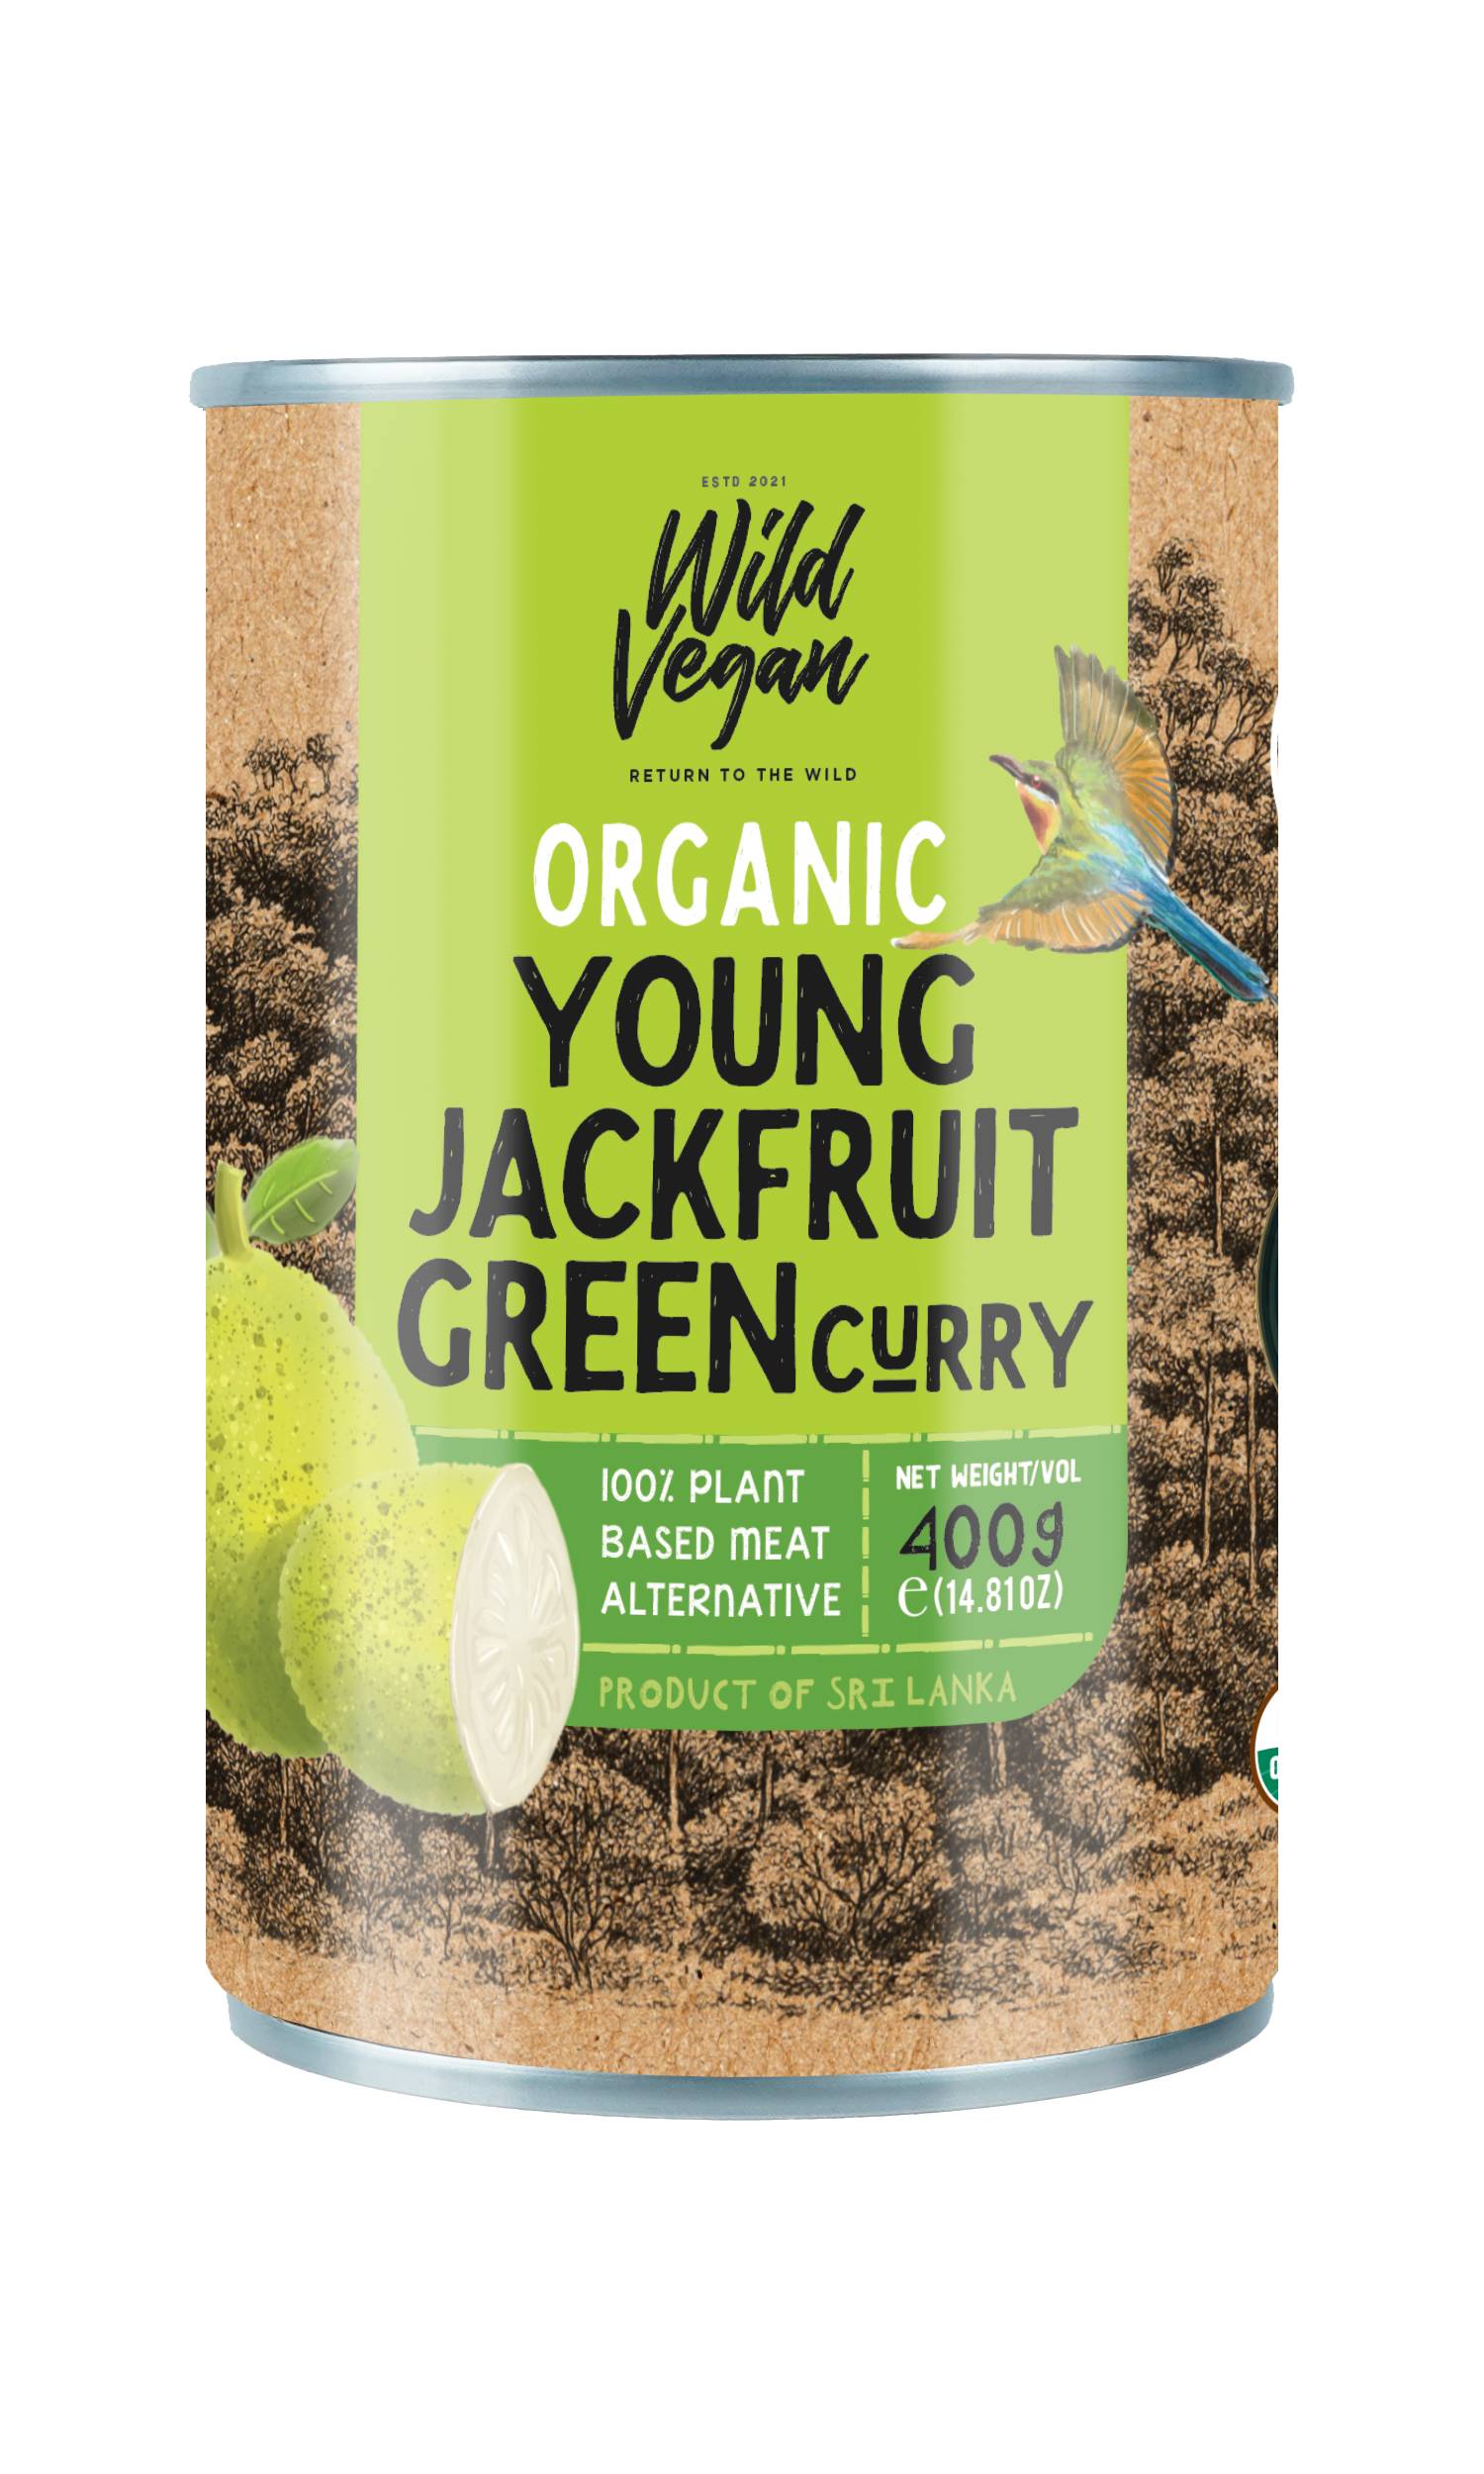 wild vegan Organic Young Jackfruit ceylon curry